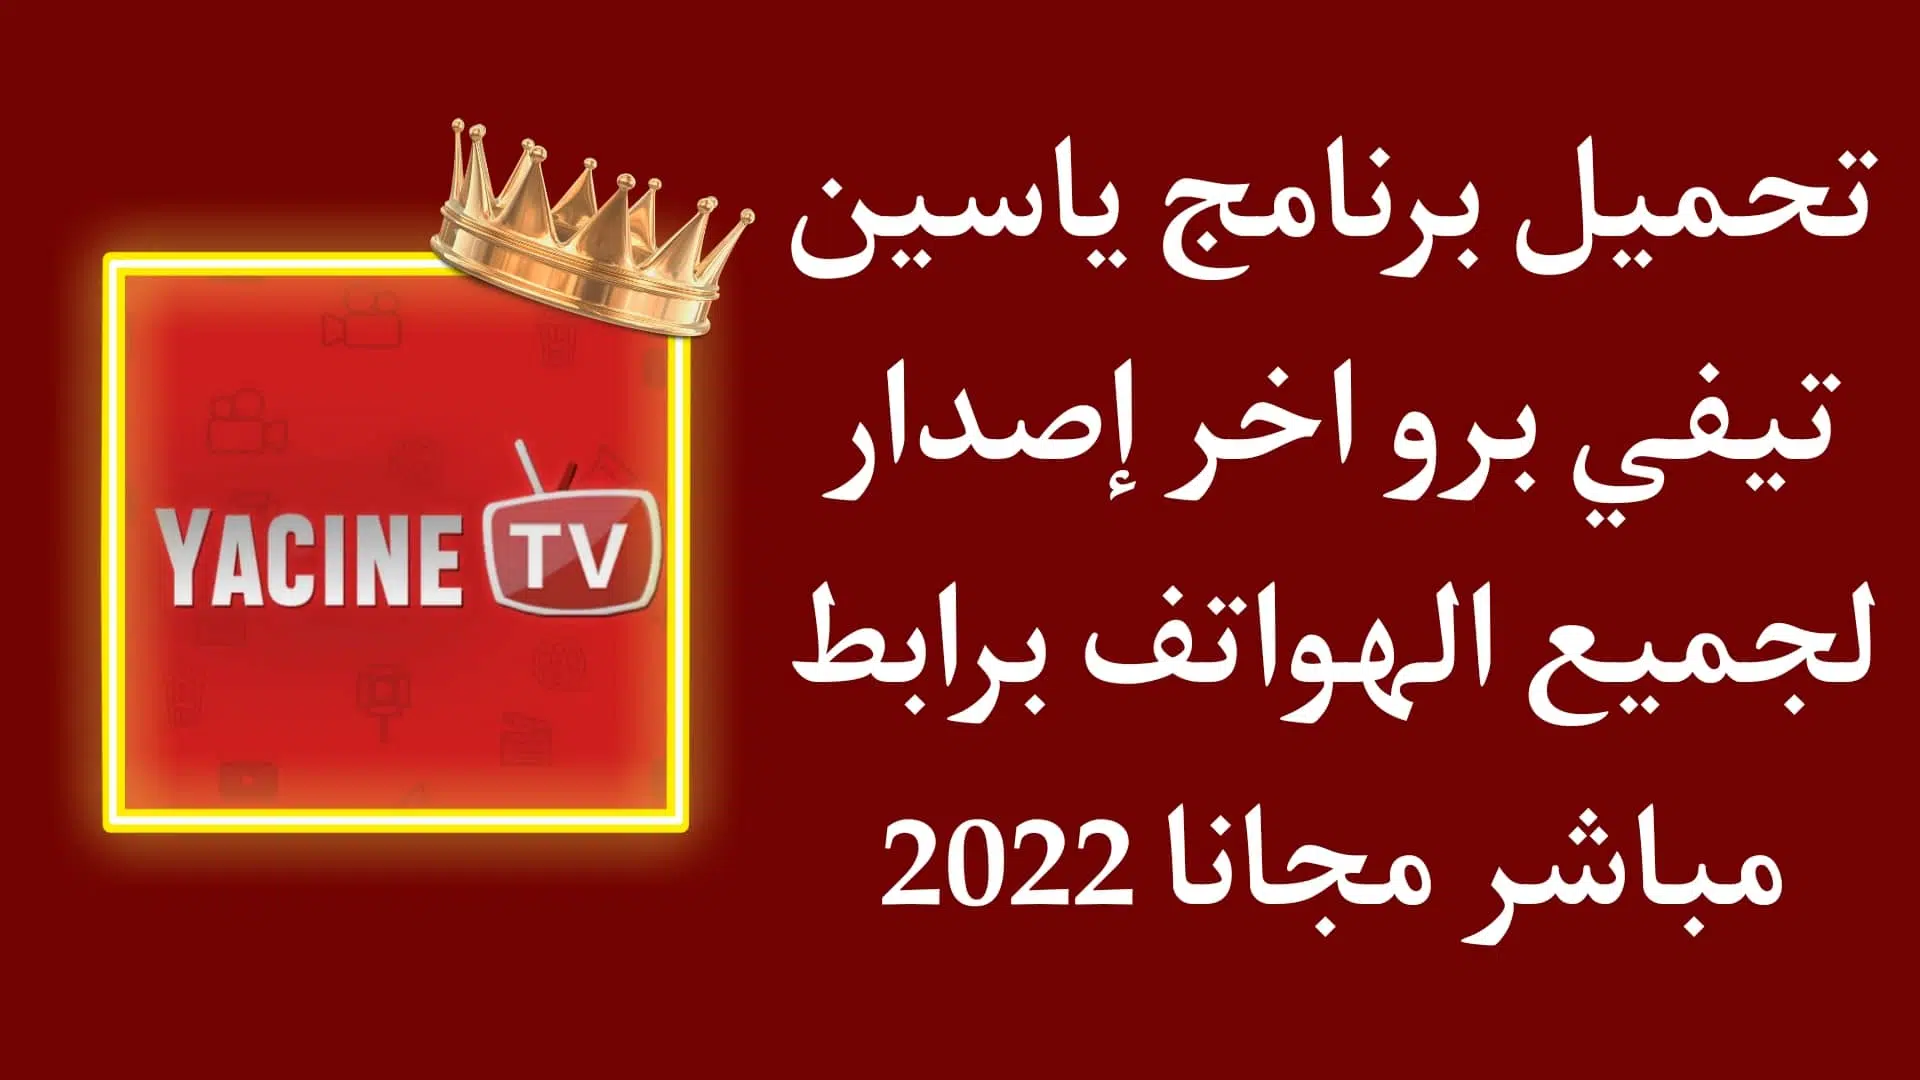 تحميل برنامج yacine tv pro ياسين تيفي بريميوم اخر اصدار 2022